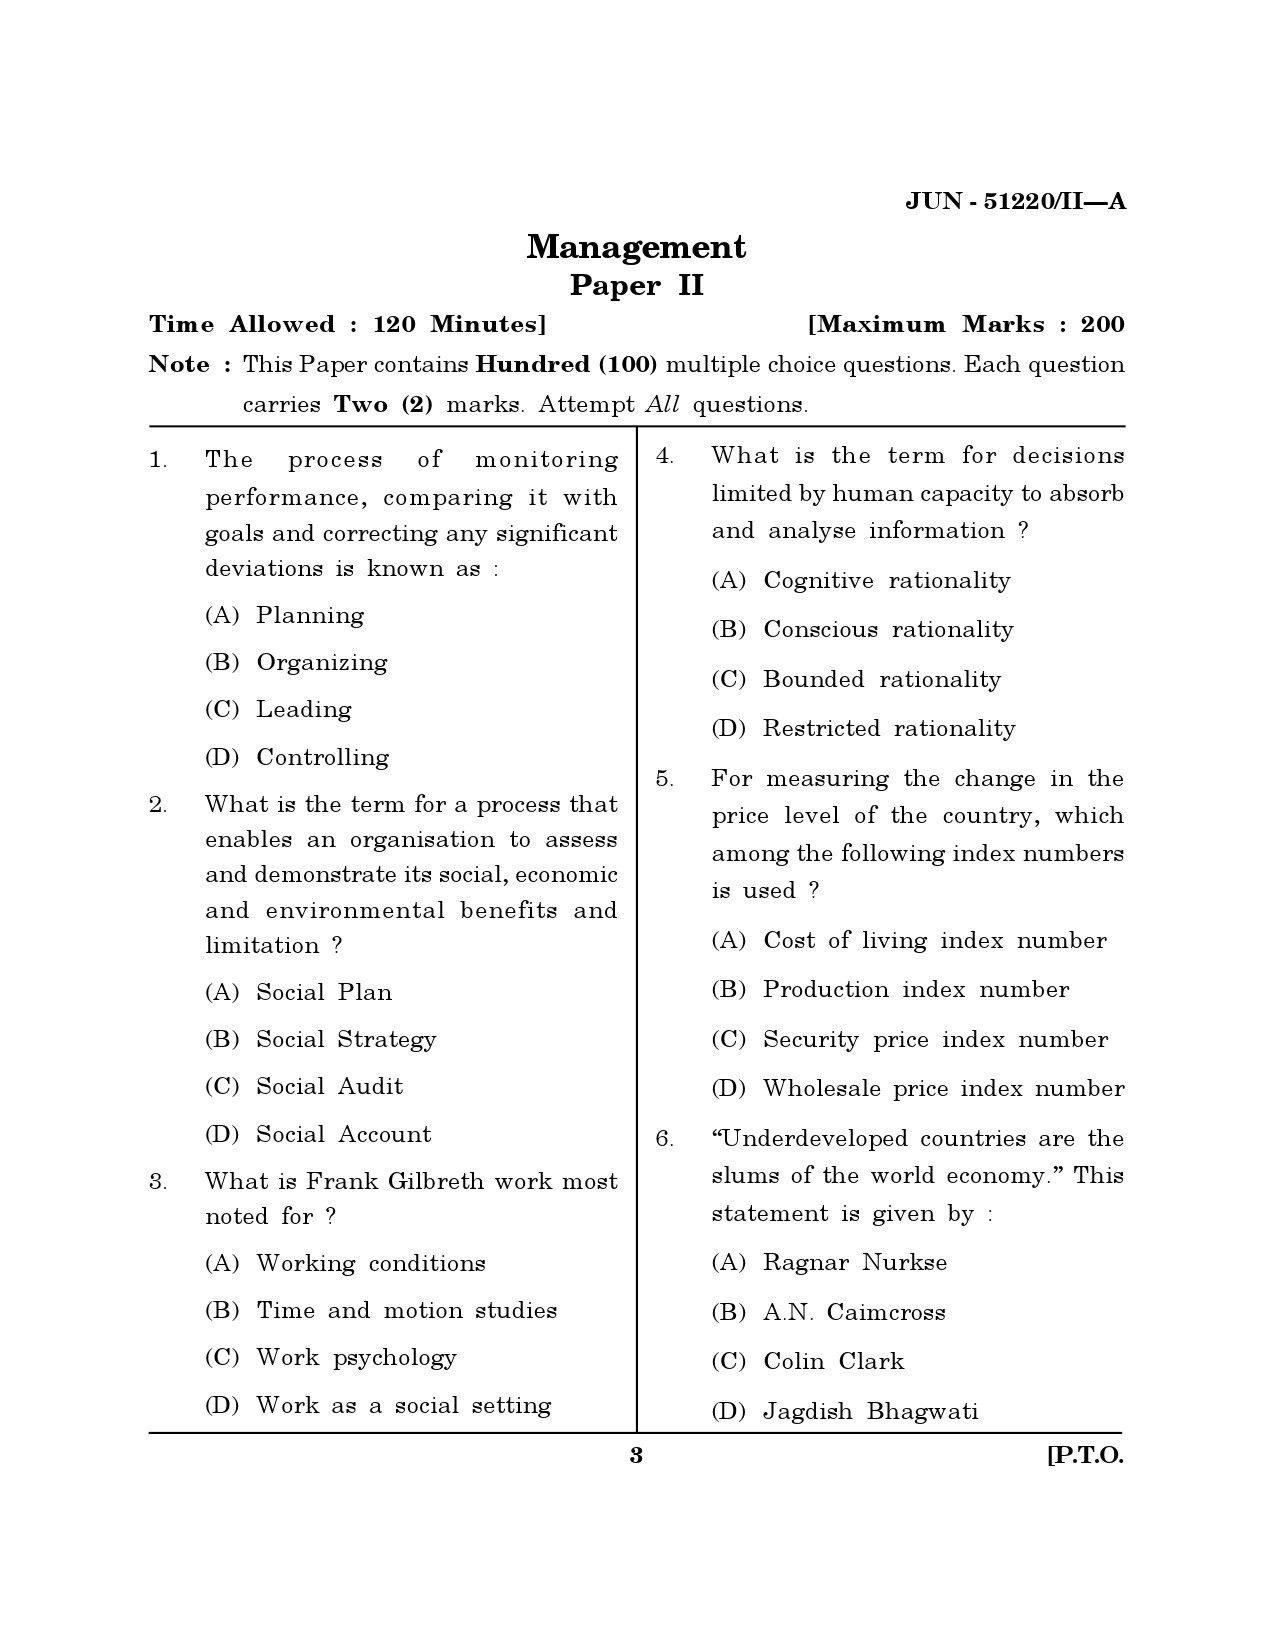 Maharashtra SET Management Question Paper II June 2020 2